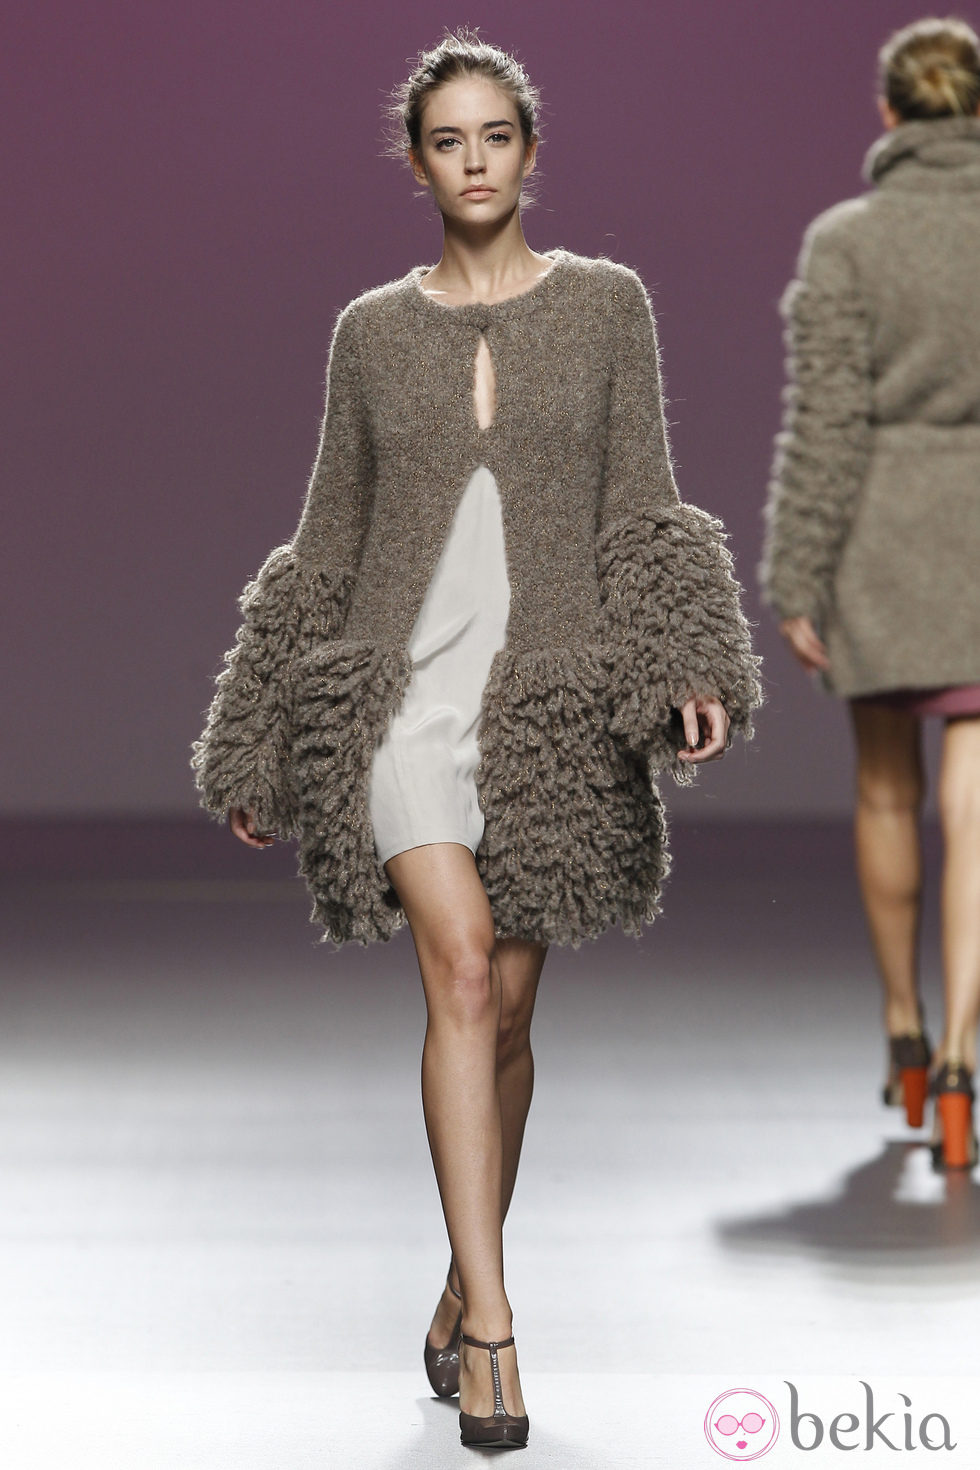 Chaqueta de lana con volumen en mangas y en el bajo de Sita Murt en la Fashion Week Madrid